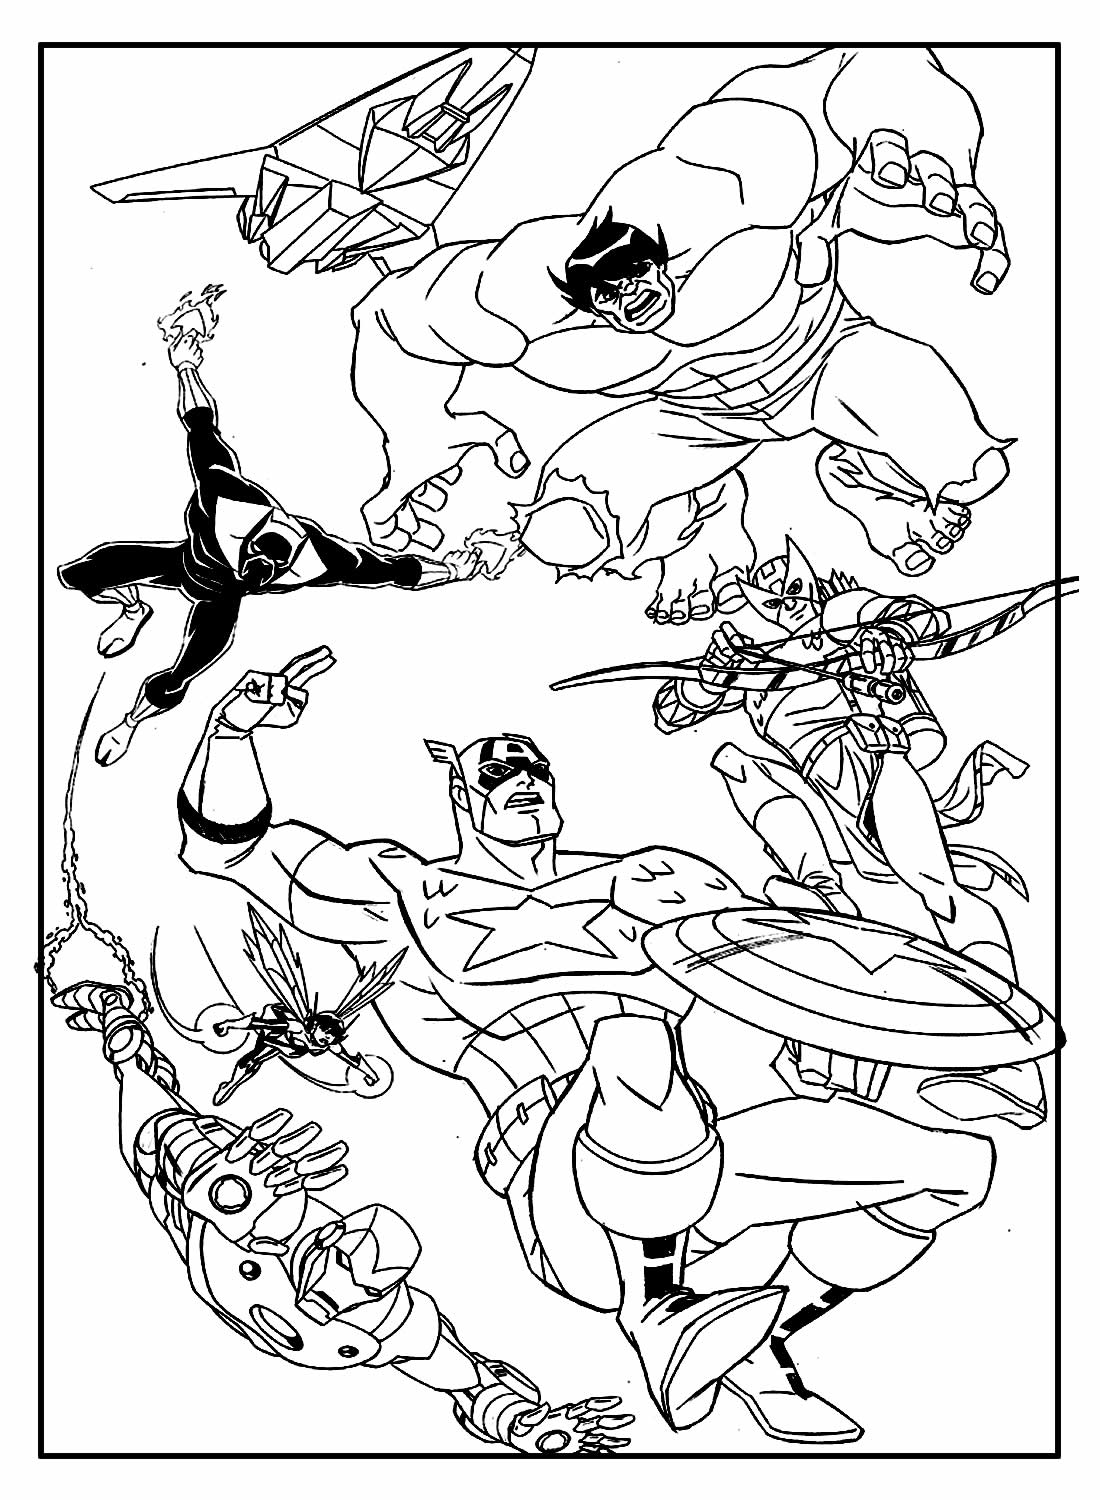 30+ Desenhos de Homem-Aranha para colorir - Como fazer em casa  Spiderman  coloring, Superhero coloring pages, Avengers coloring pages